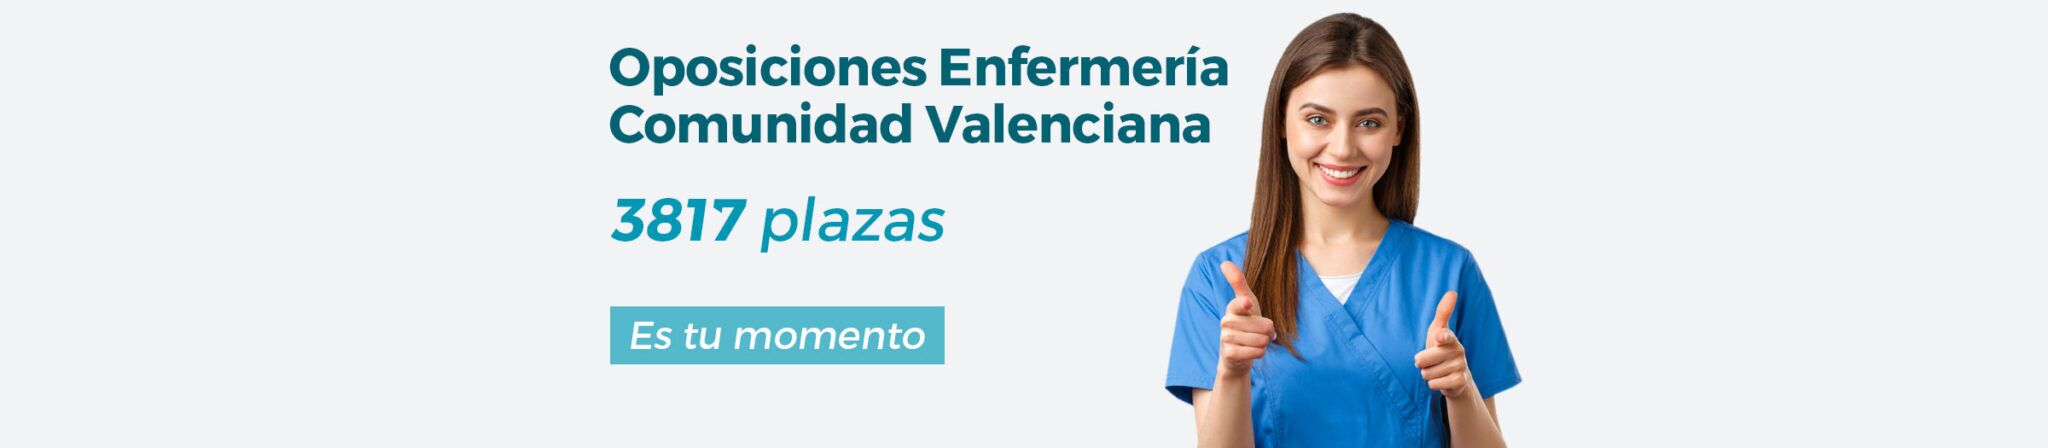 Curso OPE Enfermería Comunidad Valenciana